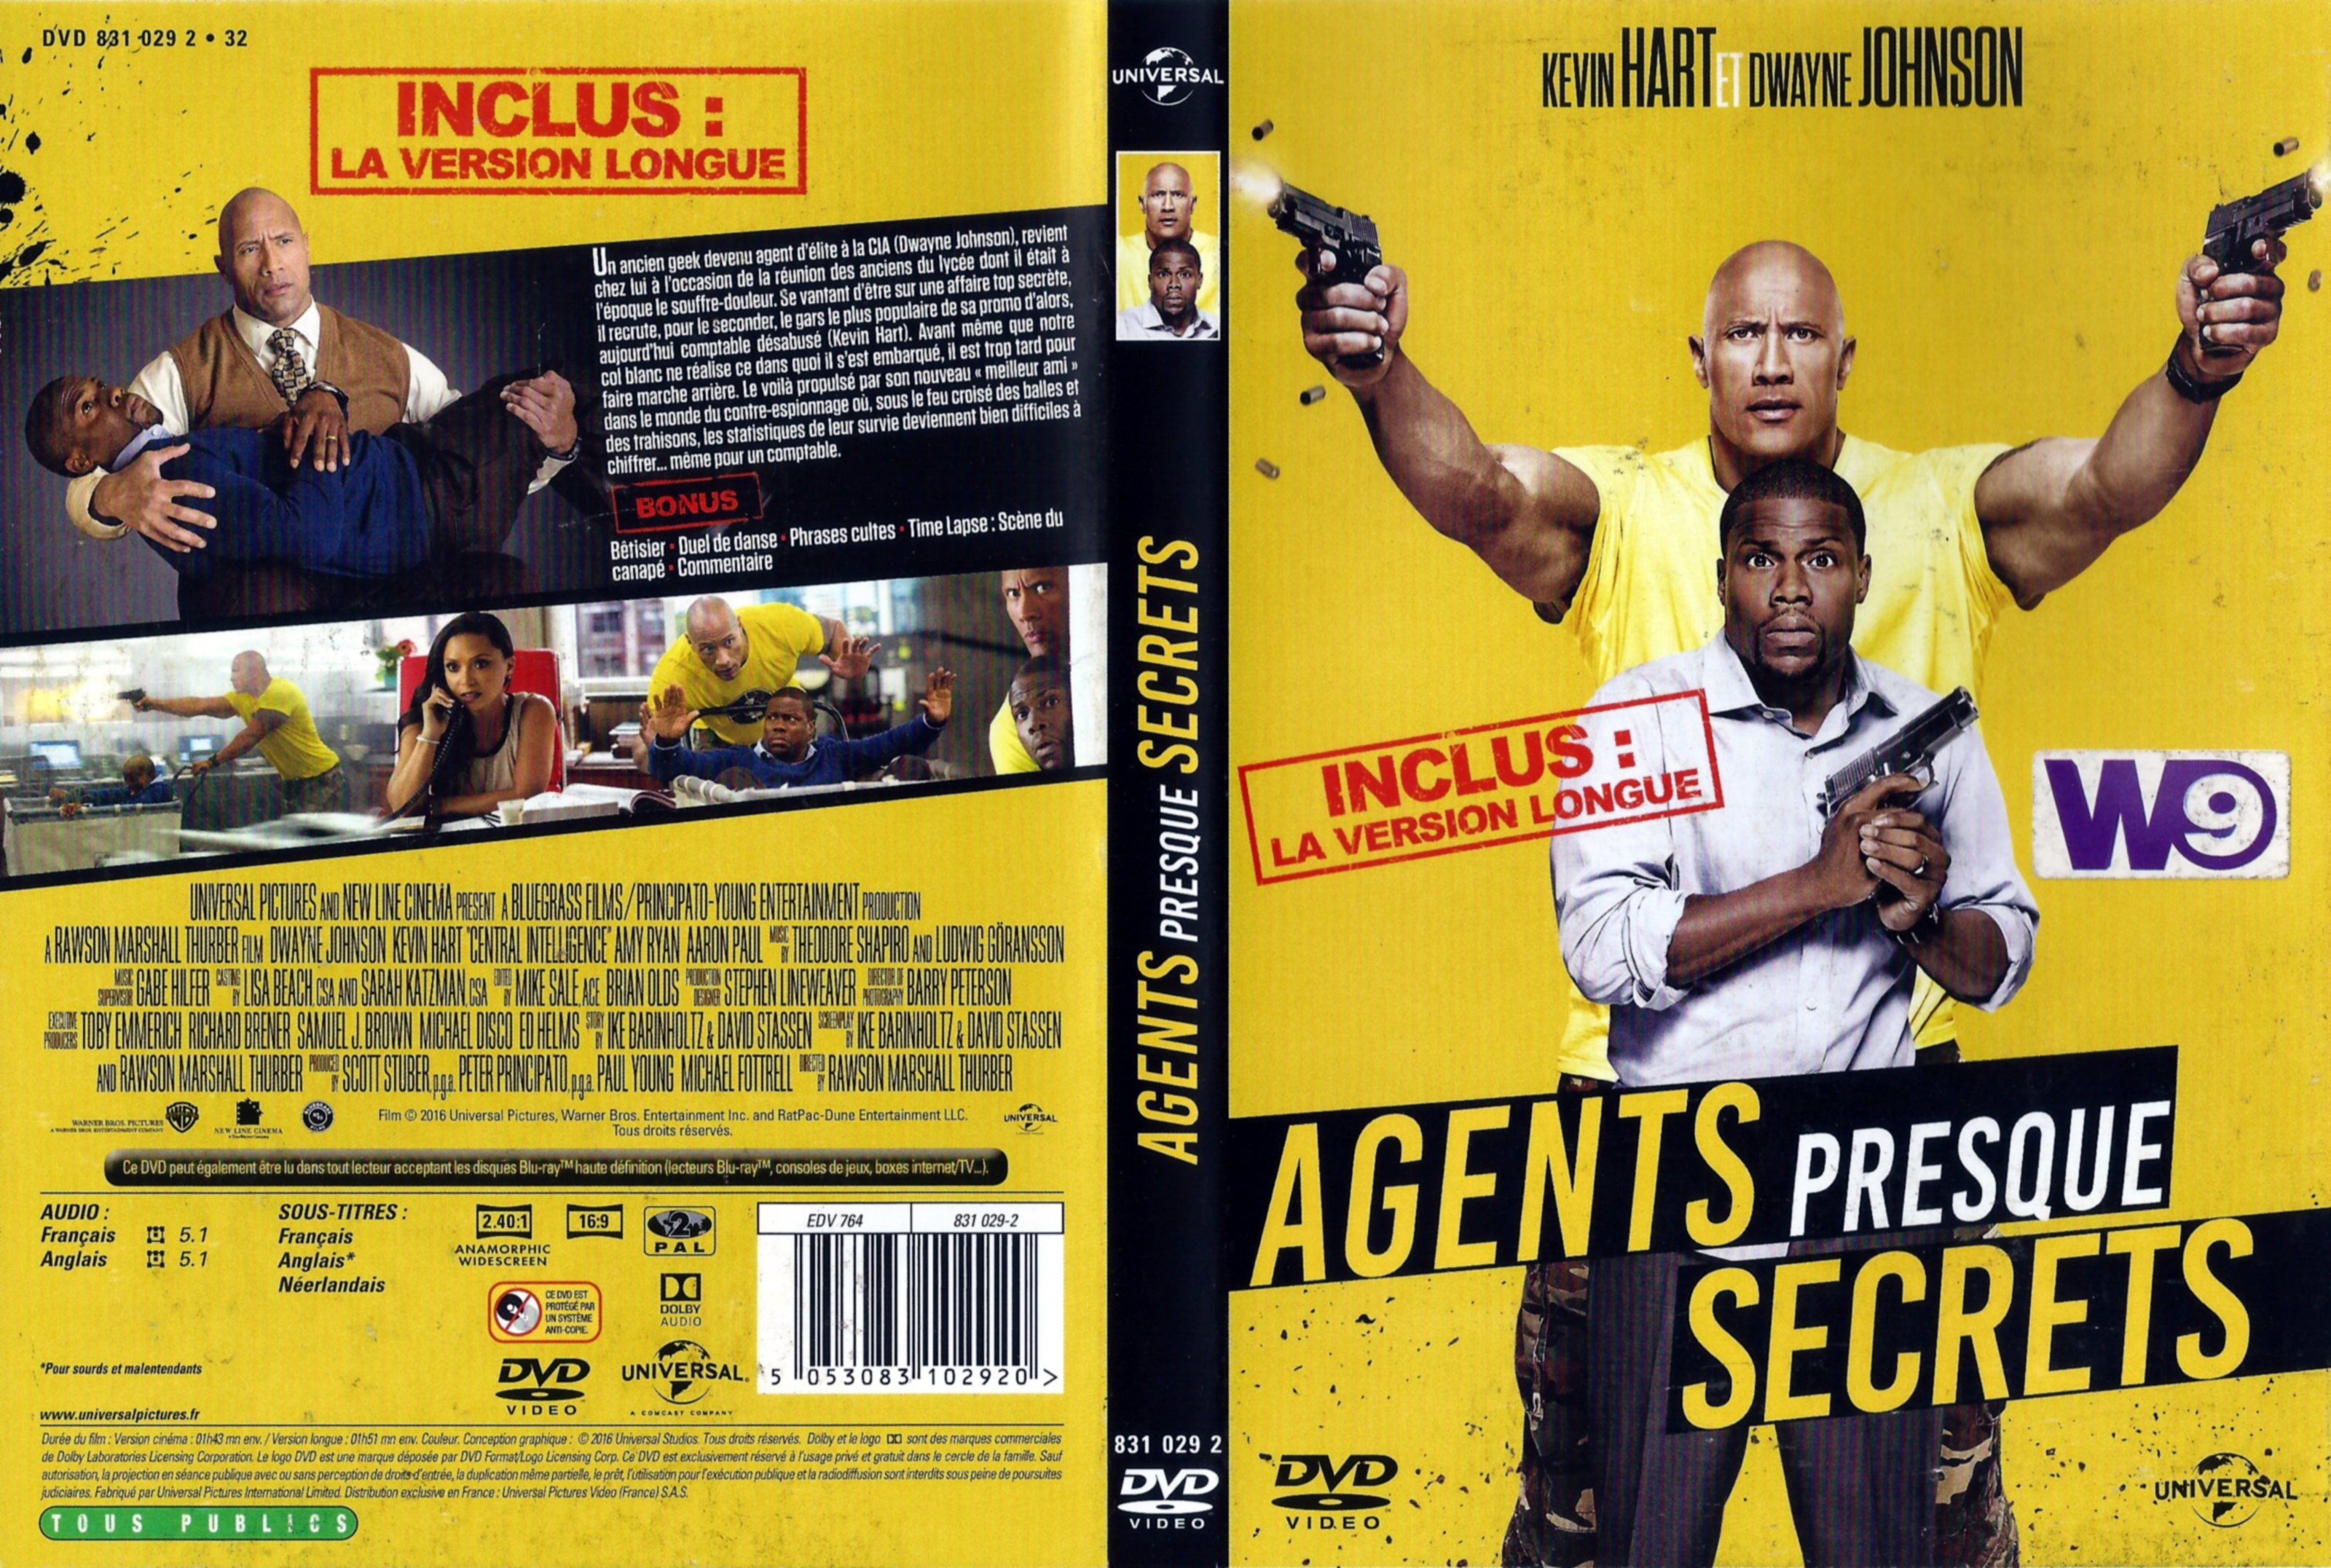 Jaquette DVD Agents presque secrets